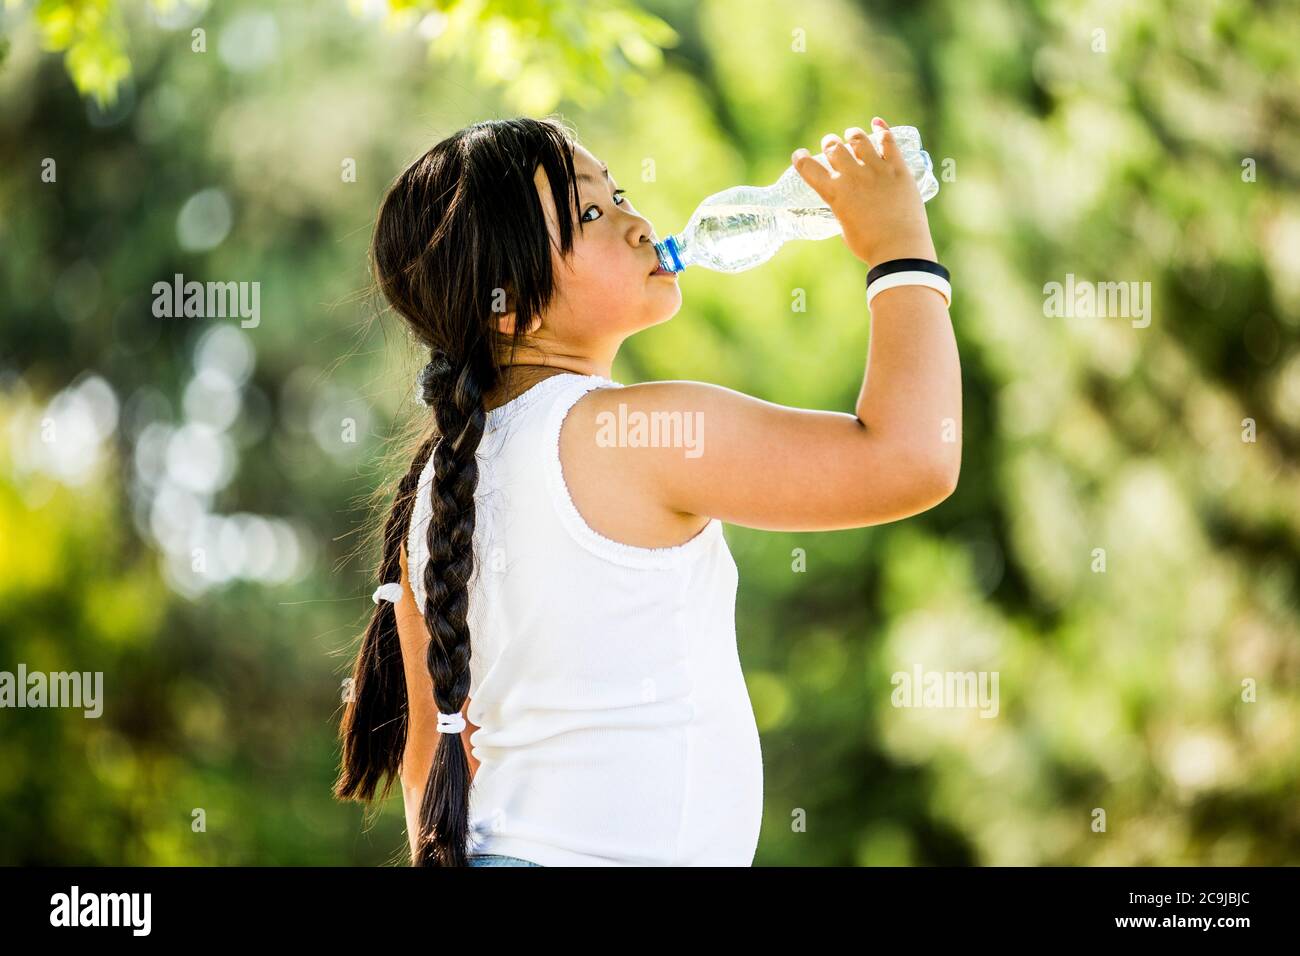 Fille de l'eau potable de bouteille en plastique dans le parc, portrait. Banque D'Images